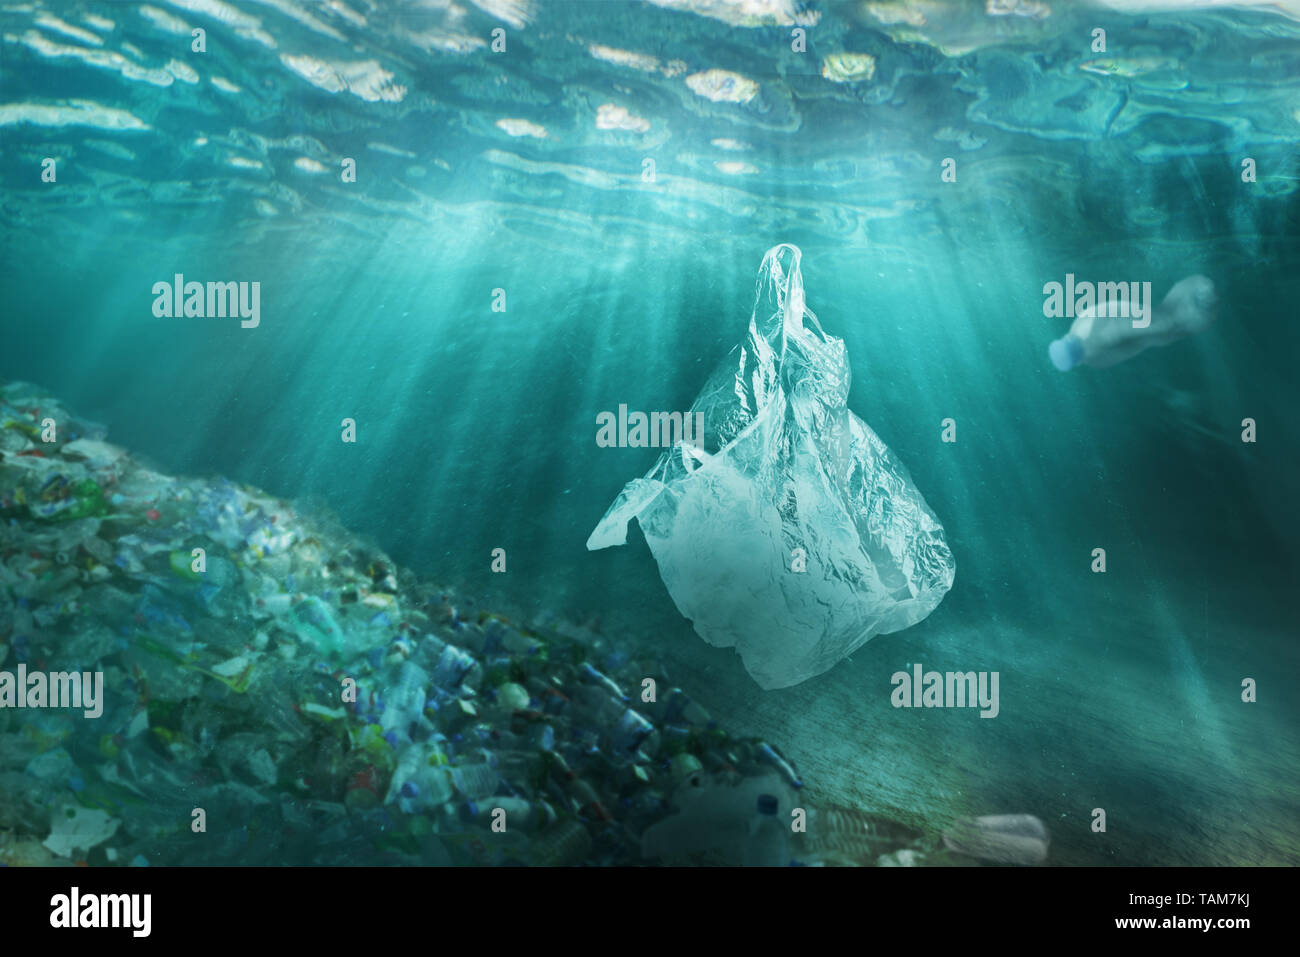 La pollution plastique dans ocean problème environnemental. Sacs en plastique et des bouteilles polluent la mer. Corbeille sous-marine. Banque D'Images